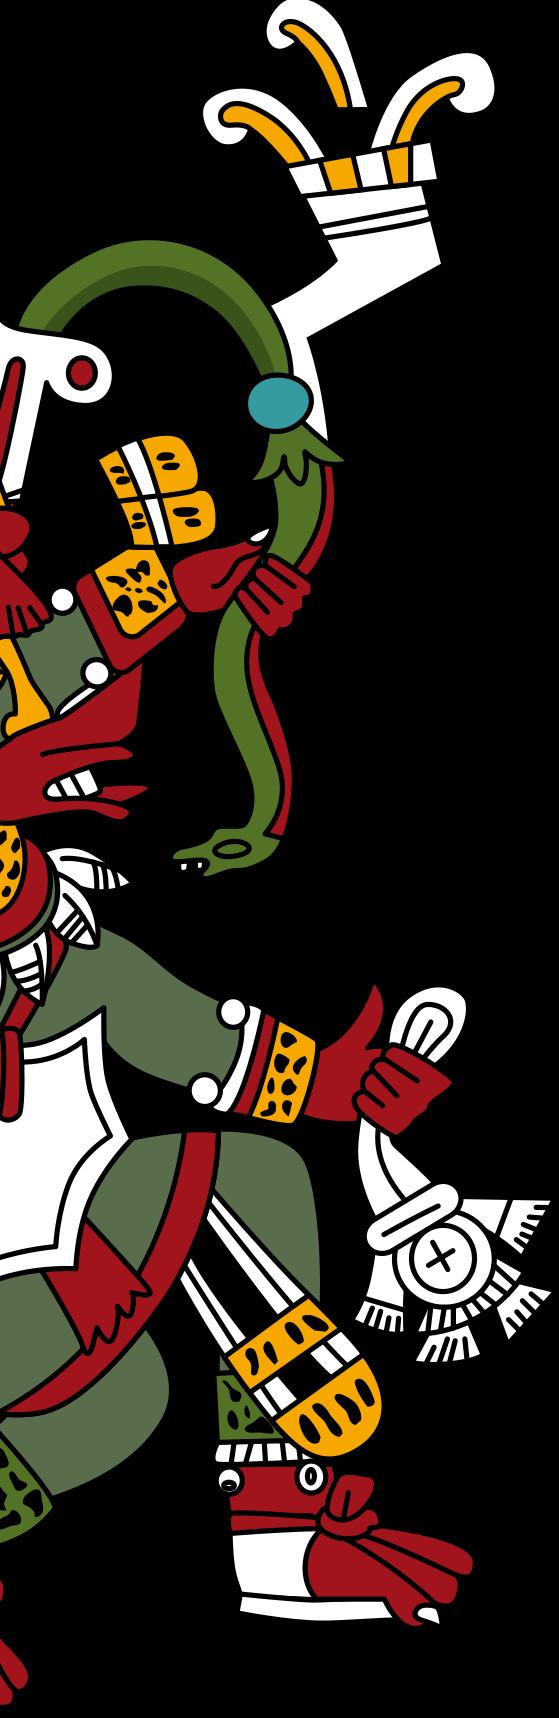 Quetzalcóatl Dios de la vida, de los vientos y sabiduría El nombre de Quetzalcóatl se compone de dos palabras de origen náhuatl: quetzal, que